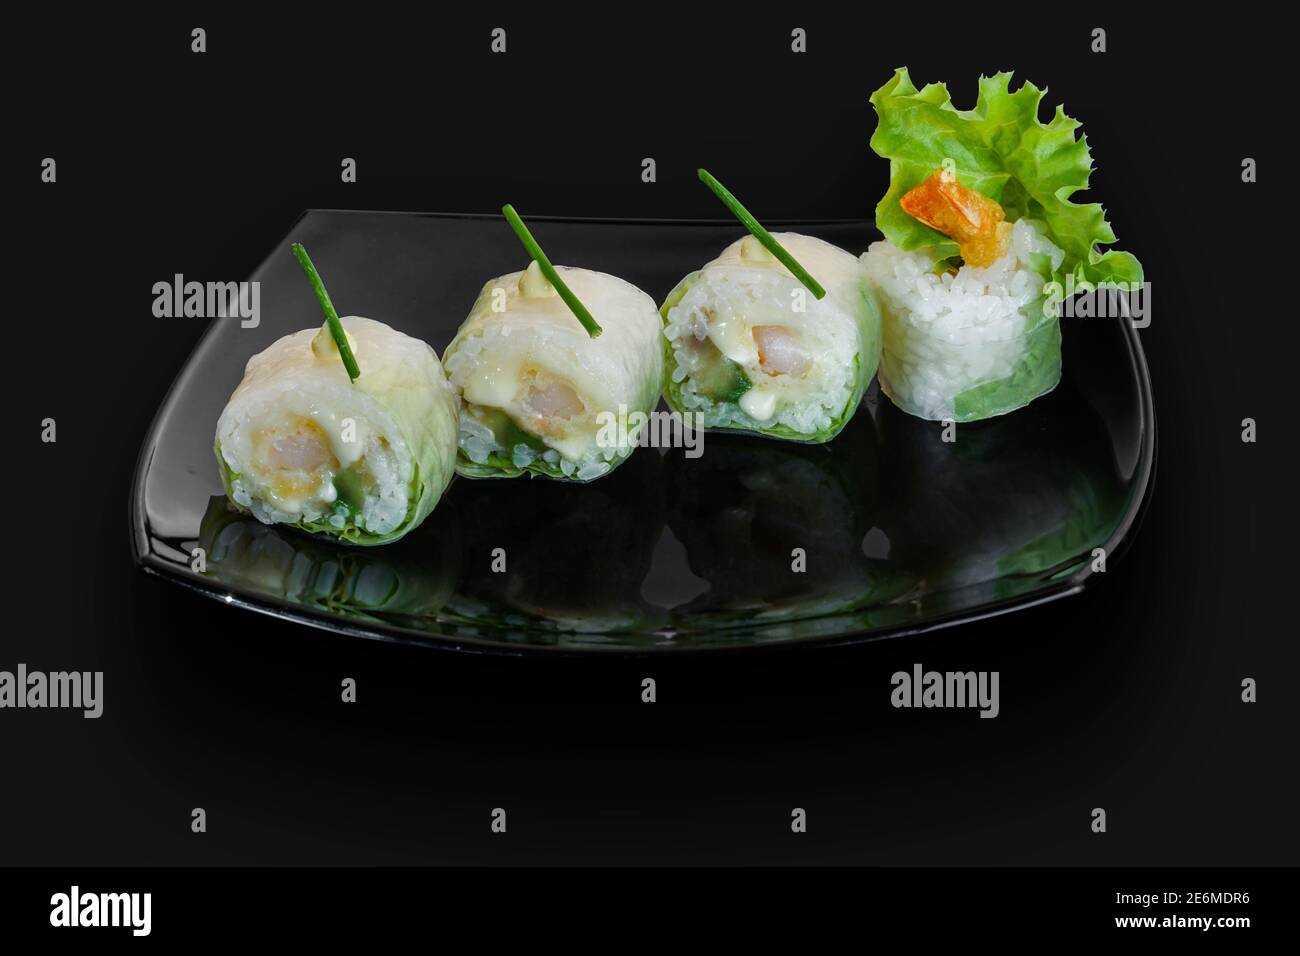 Des petits pains à sushis japonais fraîchement préparés sont servis sur une pierre noire Des petits pains à sushis japonais fraîchement préparés sont servis sur un plat noir dalle de pierre Banque D'Images